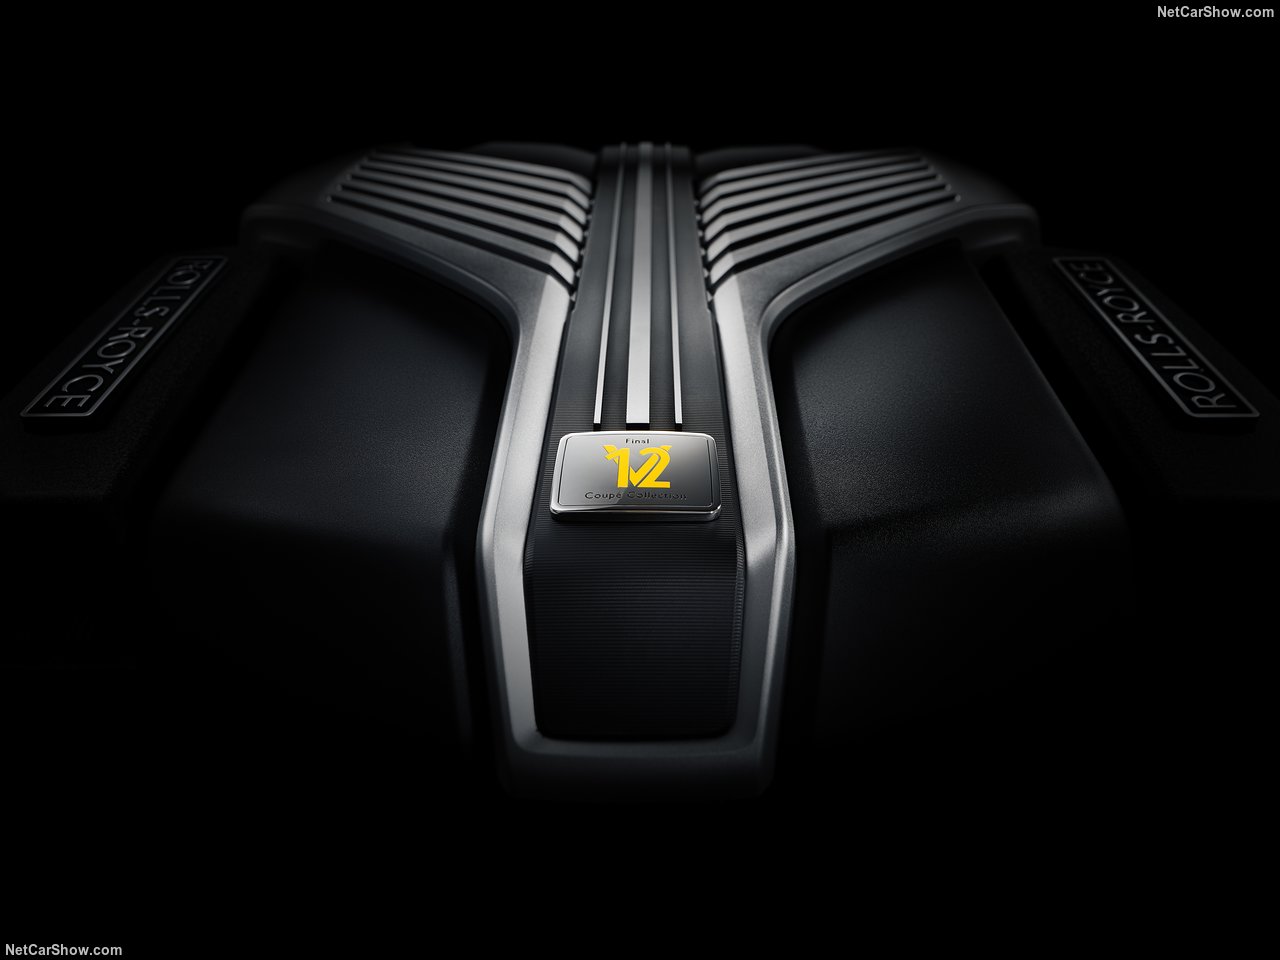 Пока Rolls-Royce смотрит в будущее полностью на электричестве, было представлено его последнее купе V12 — Black Badge Wraith Black Arrow. Эксклюзивность гарантирована: построено всего 12 экземпляров, каждый из которых имеет ряд свежих косметических и